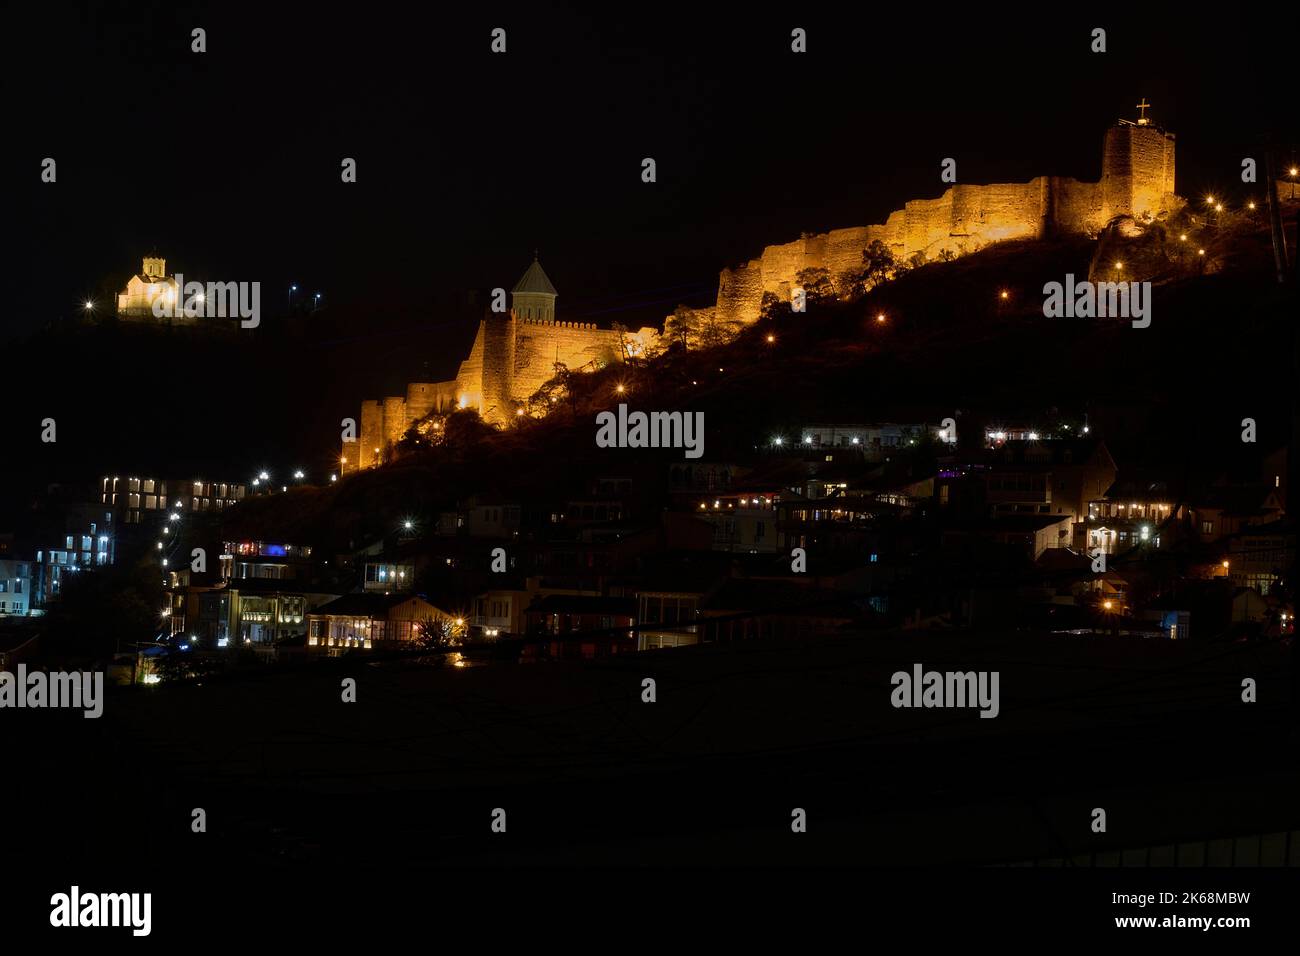 Tiflis bei Nacht, vorne die Altstadt, hinten die Mauern der Festung Nariqala, Sameba-Kathedrale, Tiflis, Georgien Stock Photo